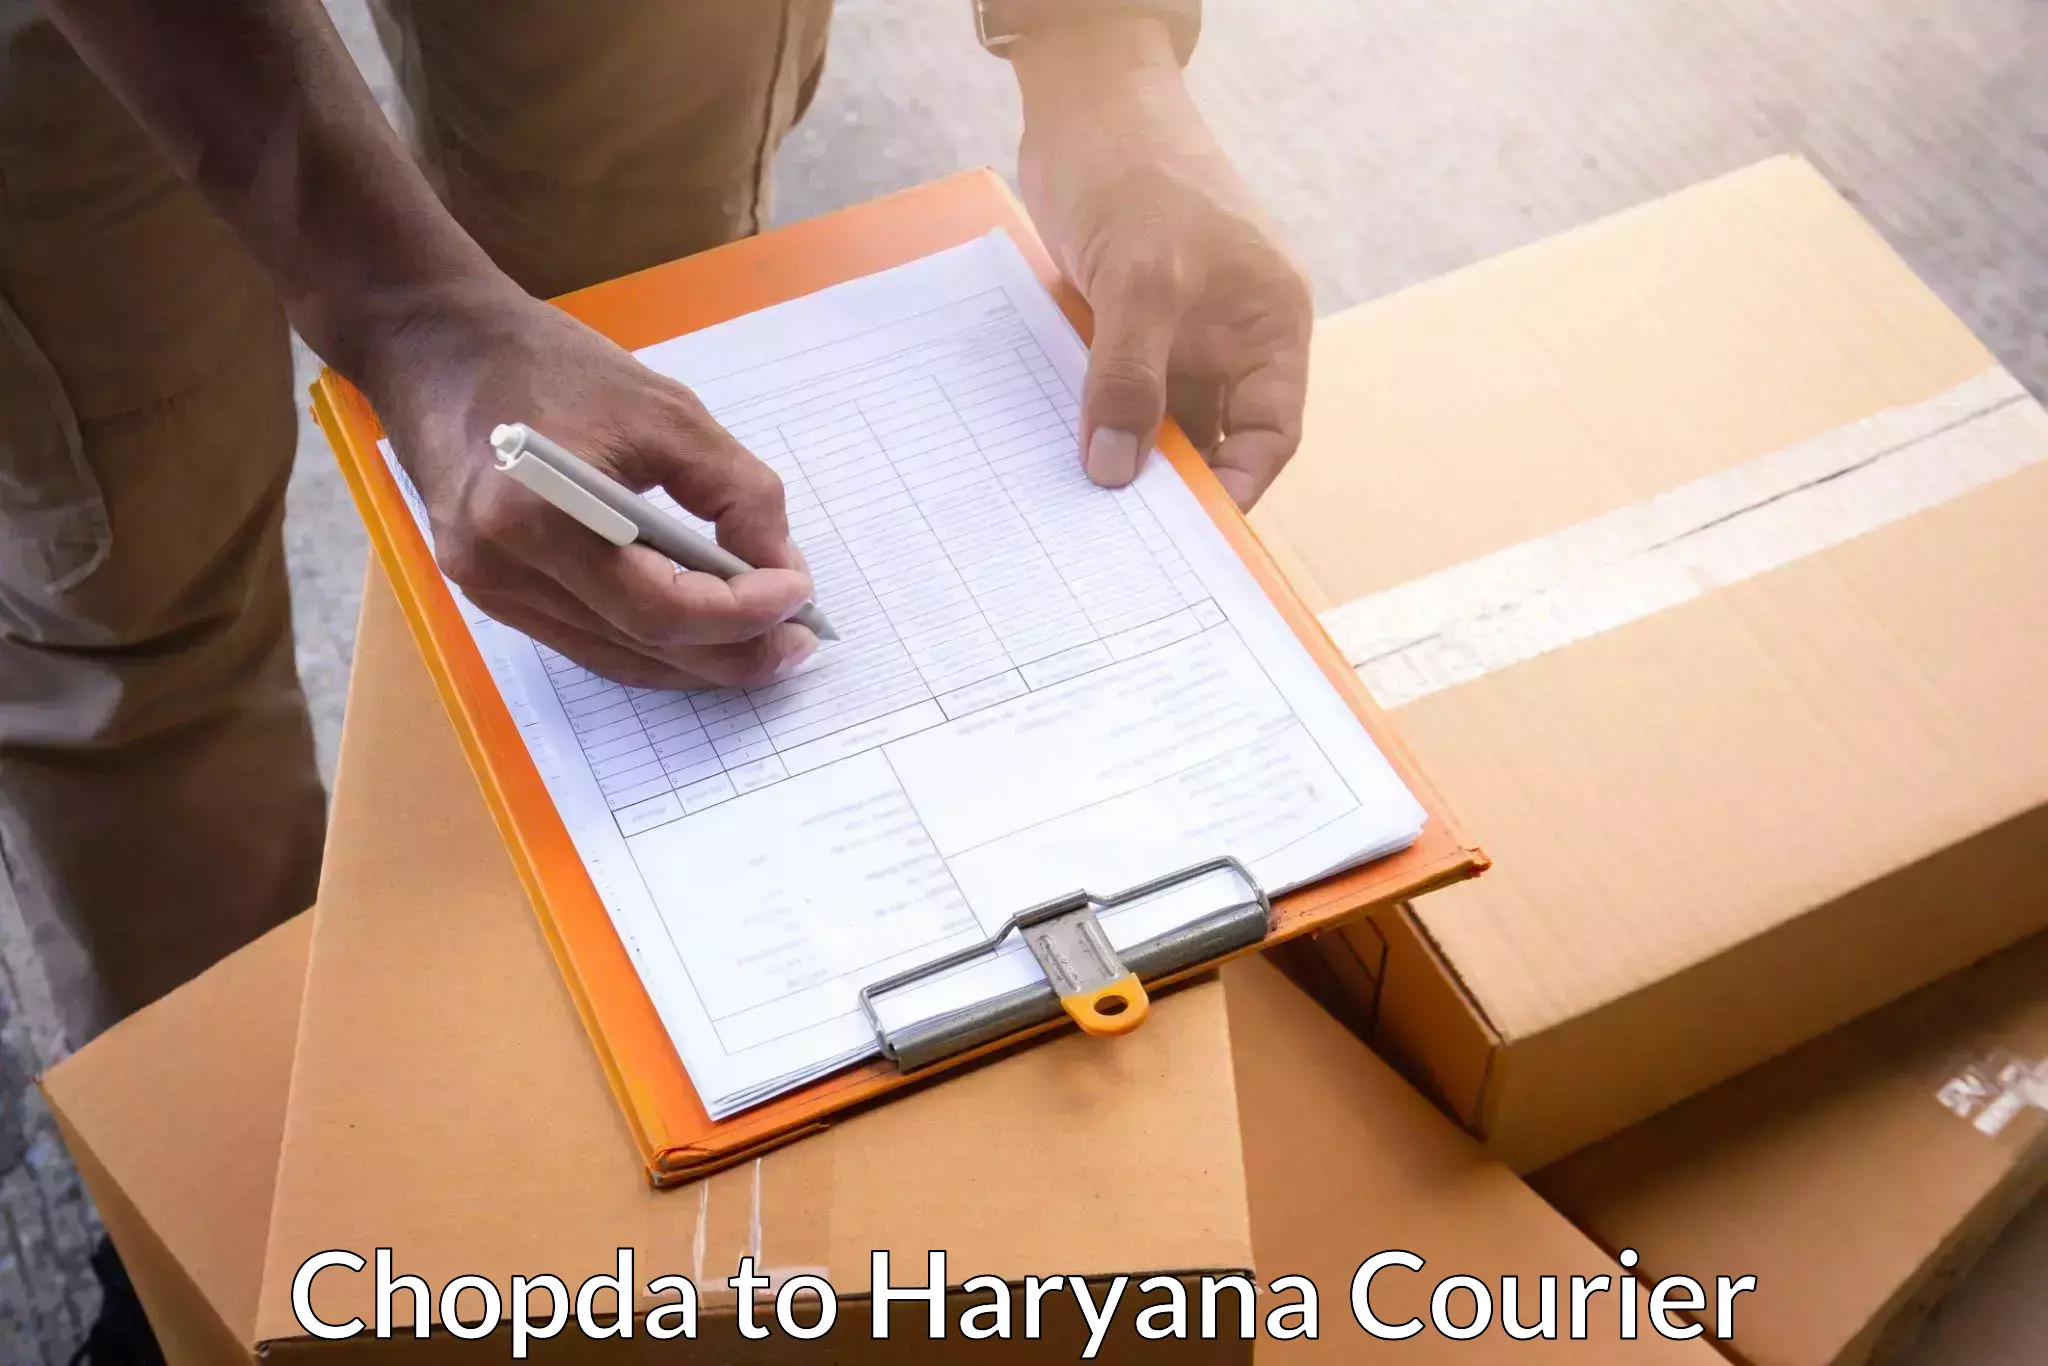 International shipping in Chopda to Panchkula